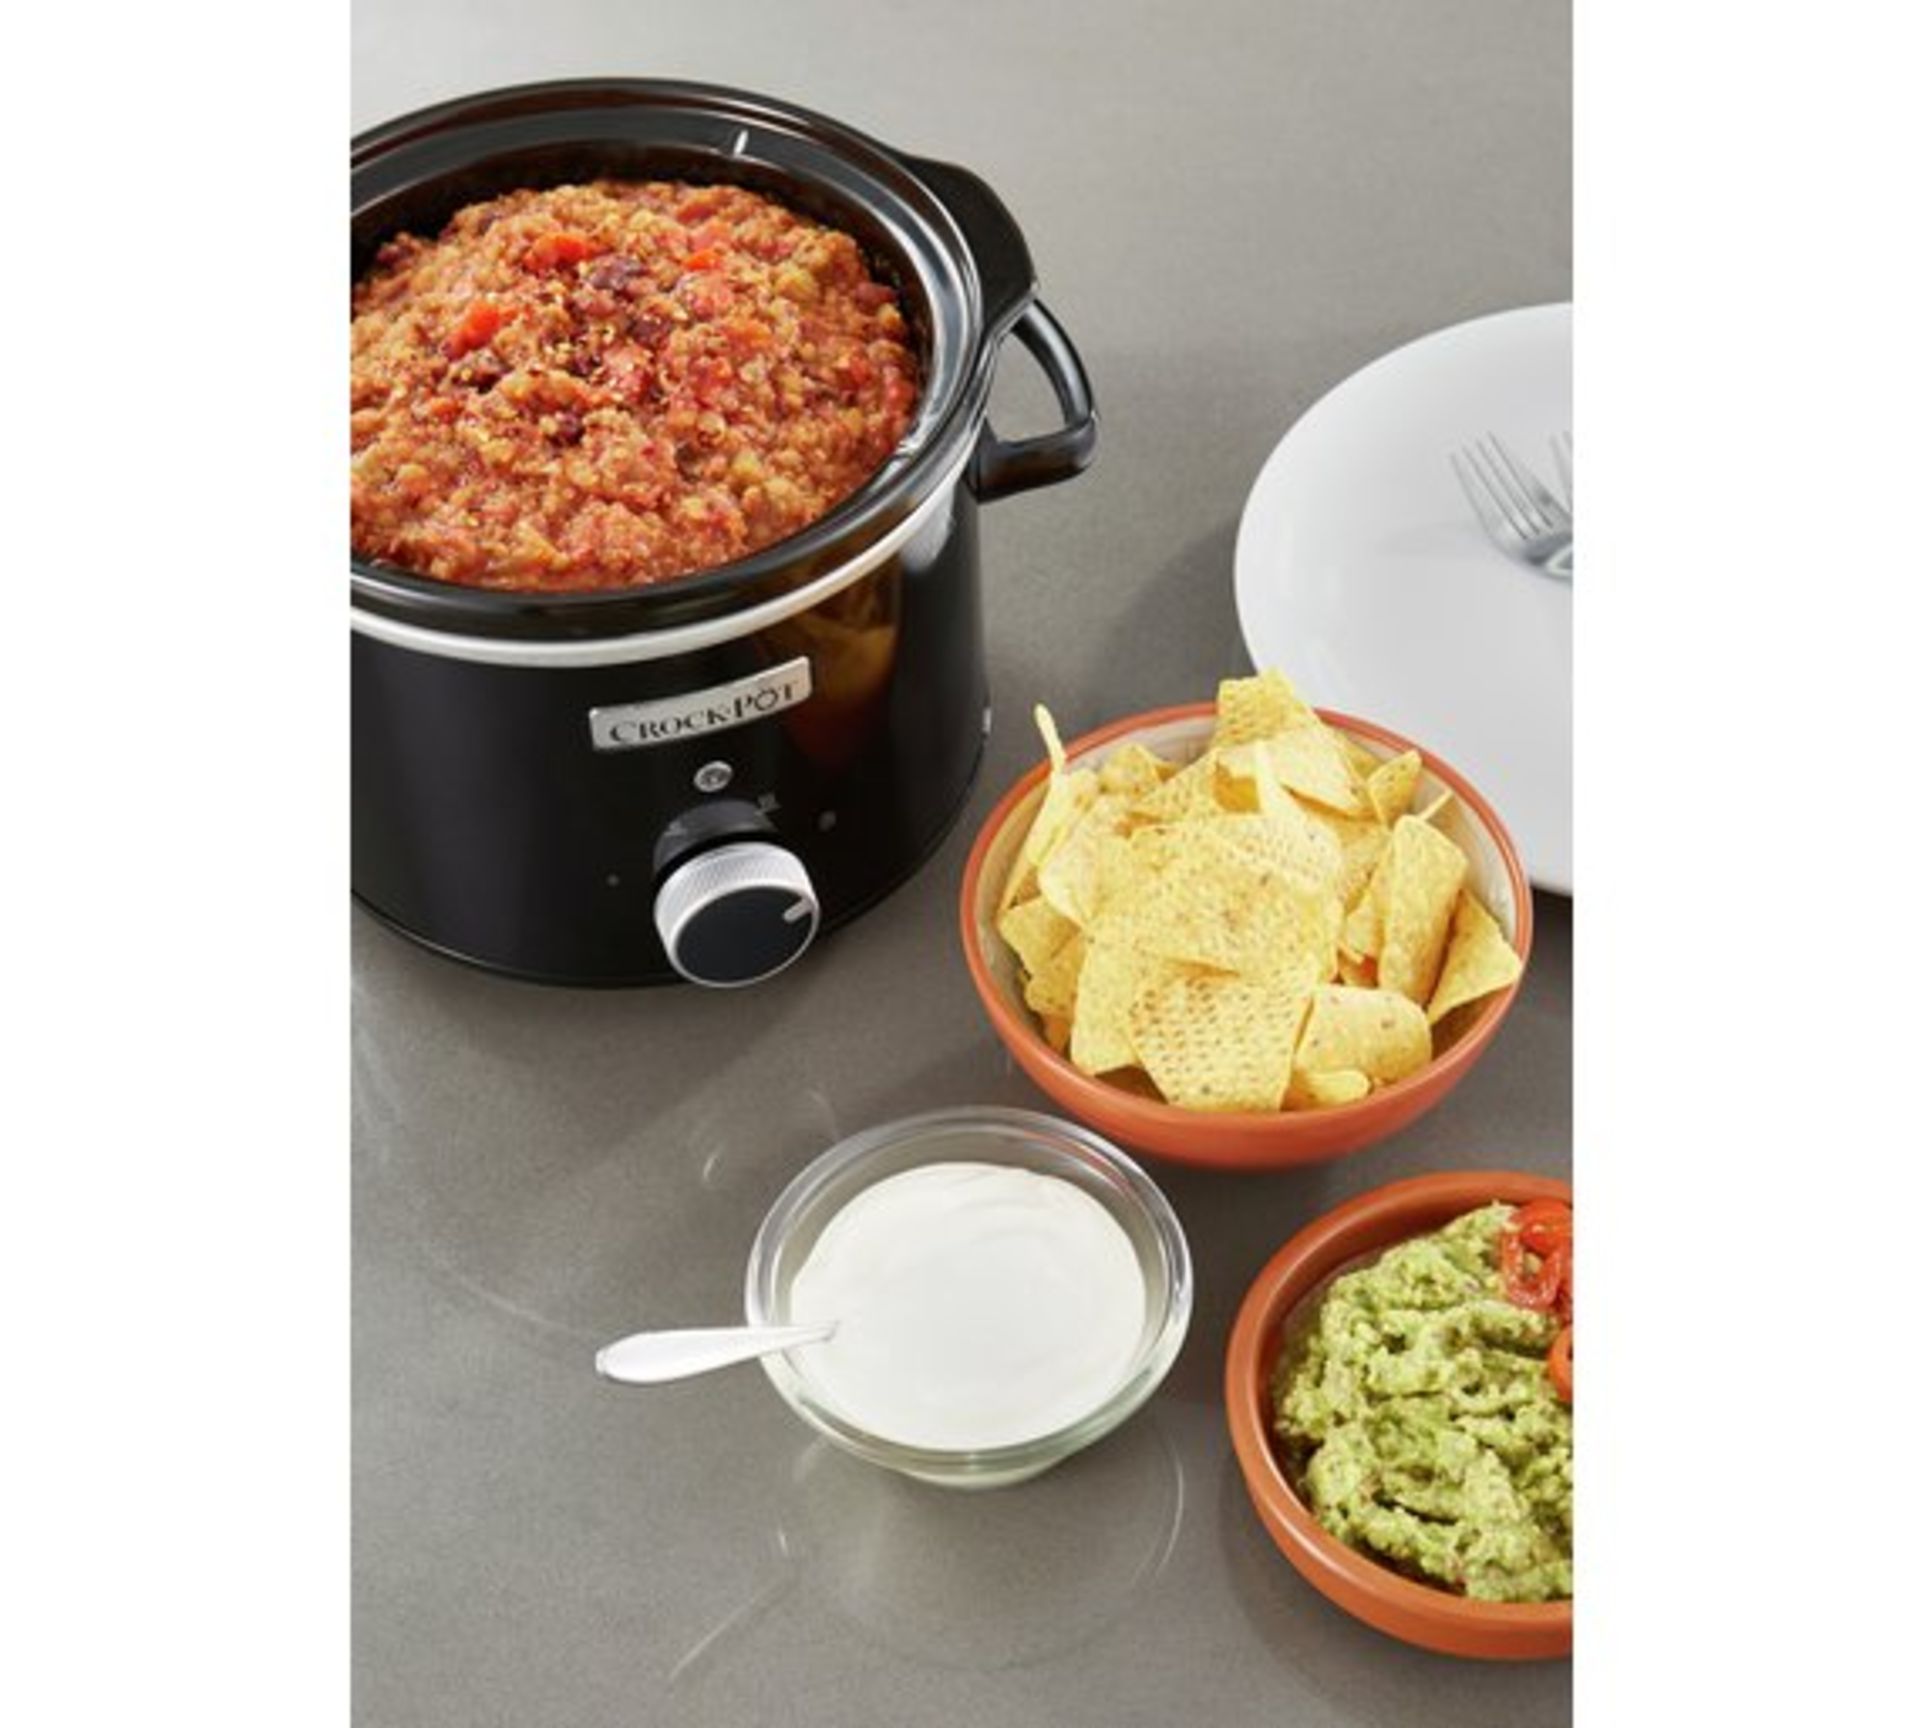 V Brand New 2.4L Crock-Pot Slow Cooker - £31.99 at Espares.co.uk - Black - Dishwasher Safe - Oven - Image 3 of 3